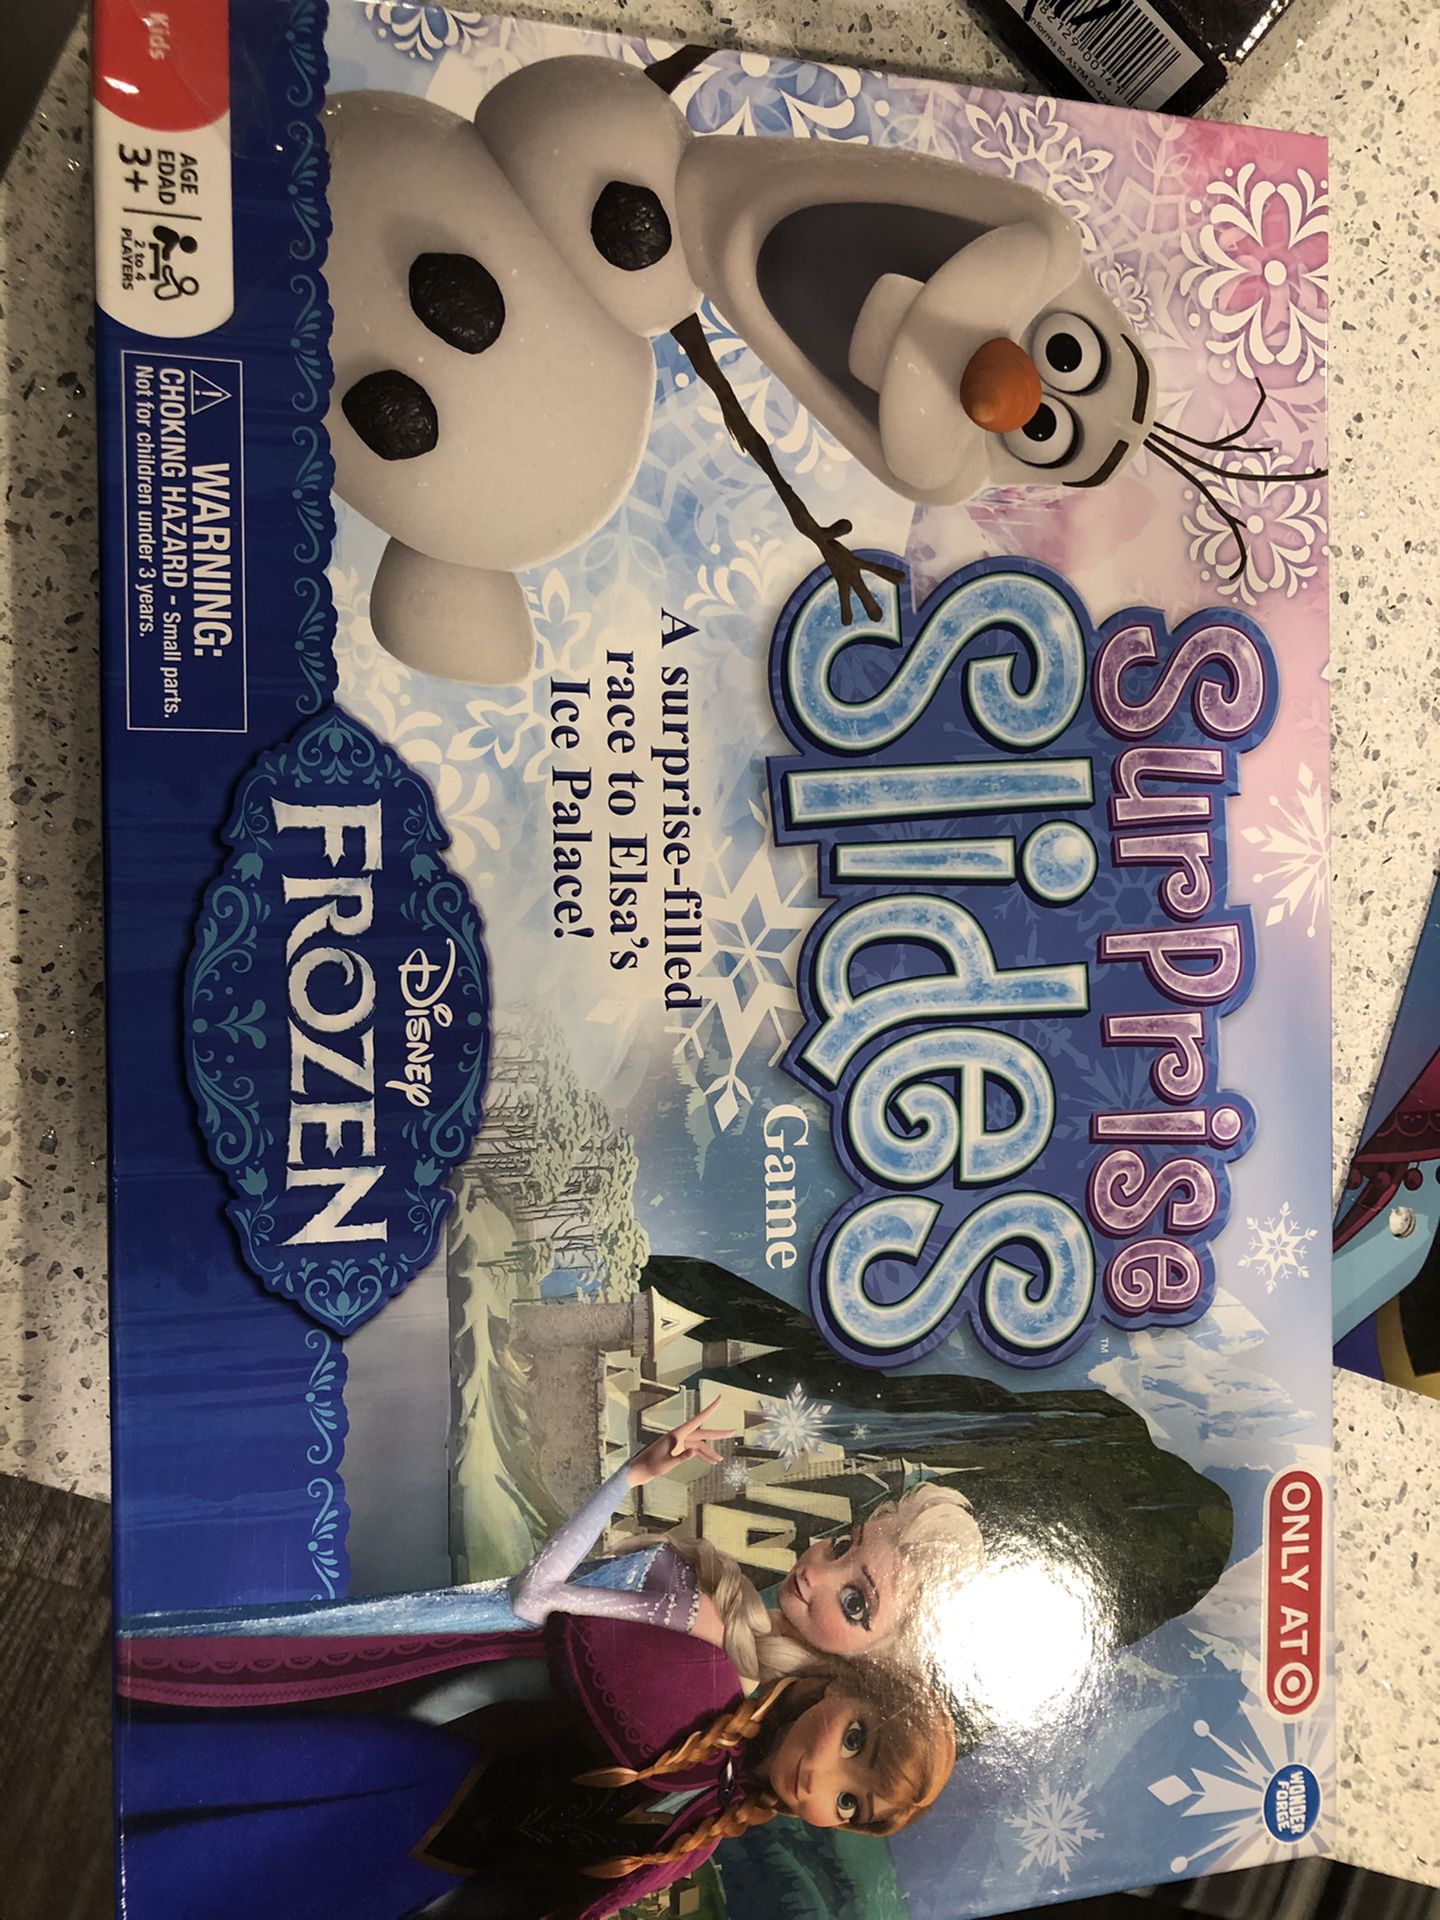 Frozen board game